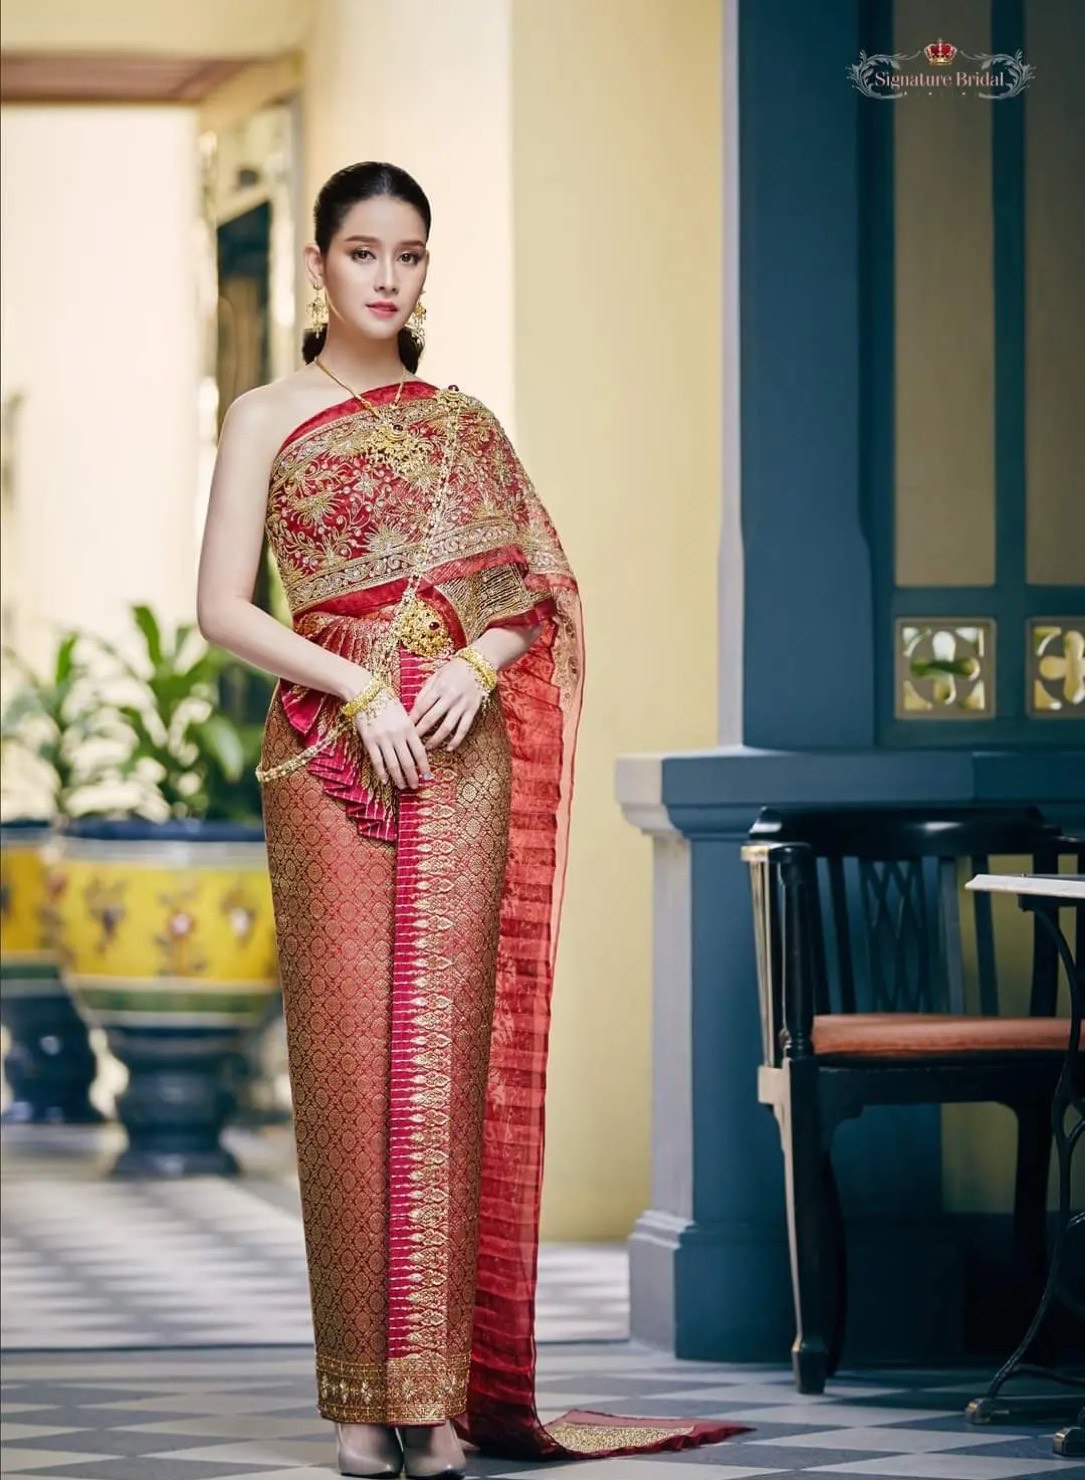 泰国服饰美图欣赏